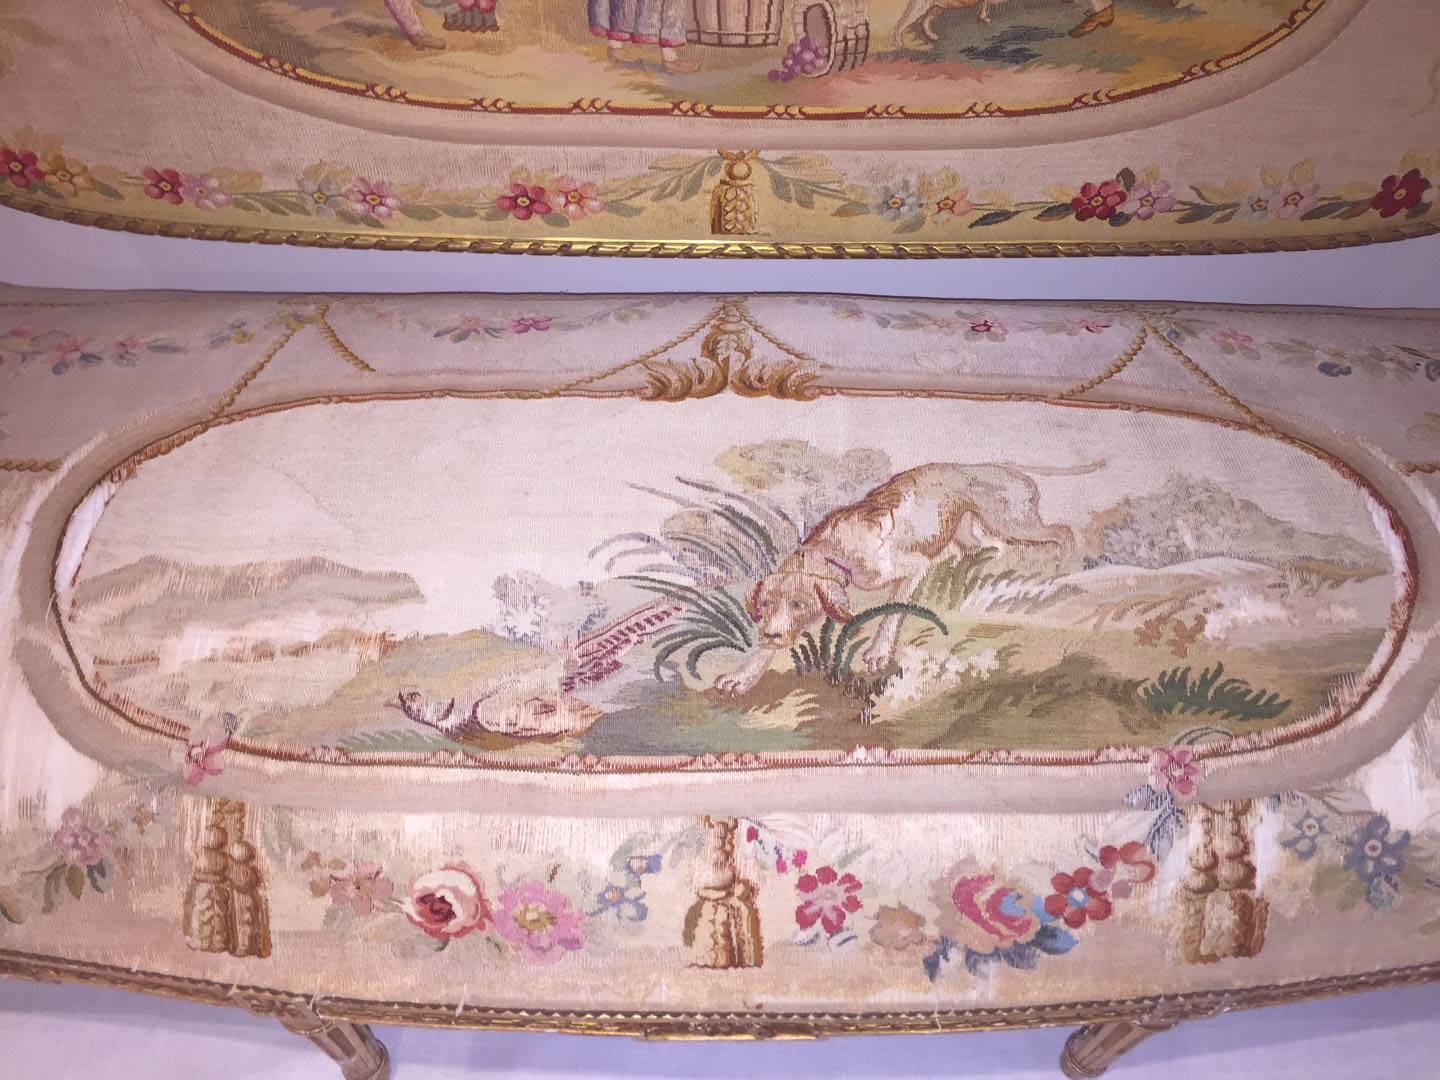 Suite de salon à cinq pièces en bois doré et tapisserie de style Louis XVI, vers 1890.
Comprend un canapé et quatre fauteuils tapissés de tapisseries d'Aubusson représentant des enfants et des animaux dans une scène pastorale.
Le canape 41